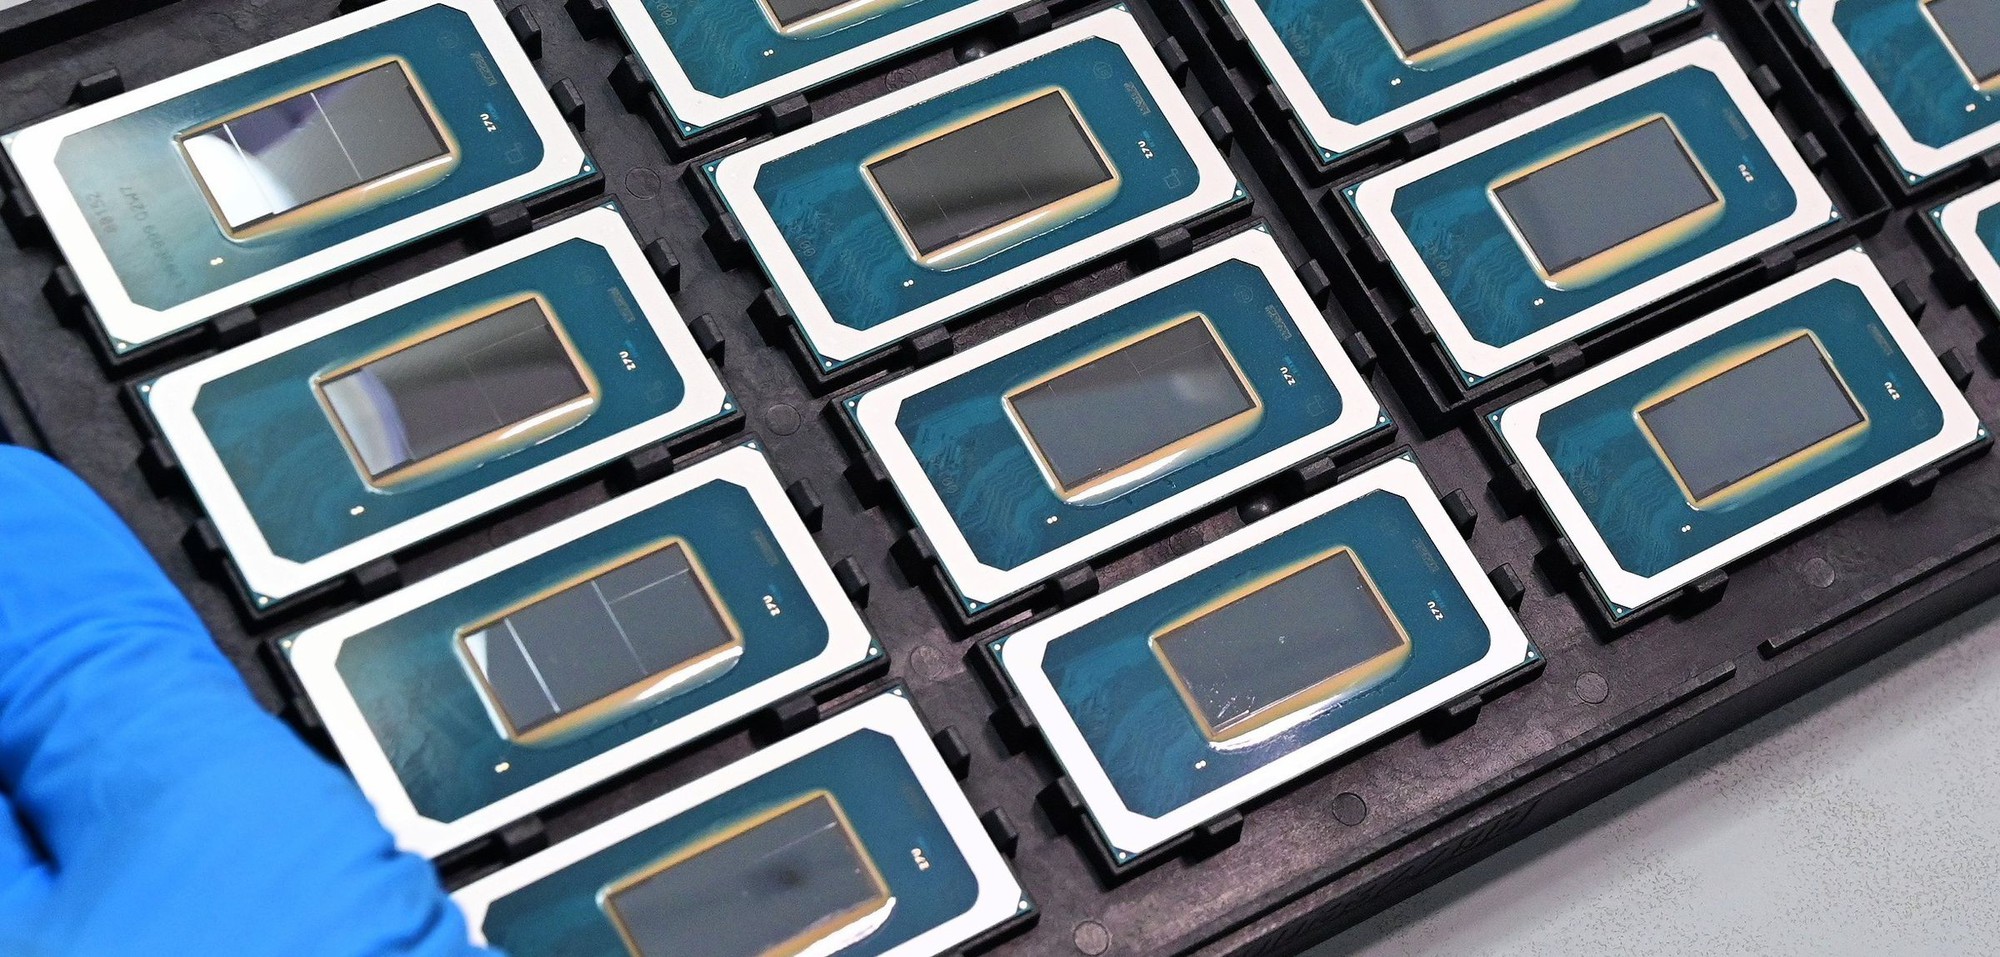 Intel 'học theo' công nghệ cách mạng đã ra mắt từ 1 năm trước của AMD - Ảnh 2.